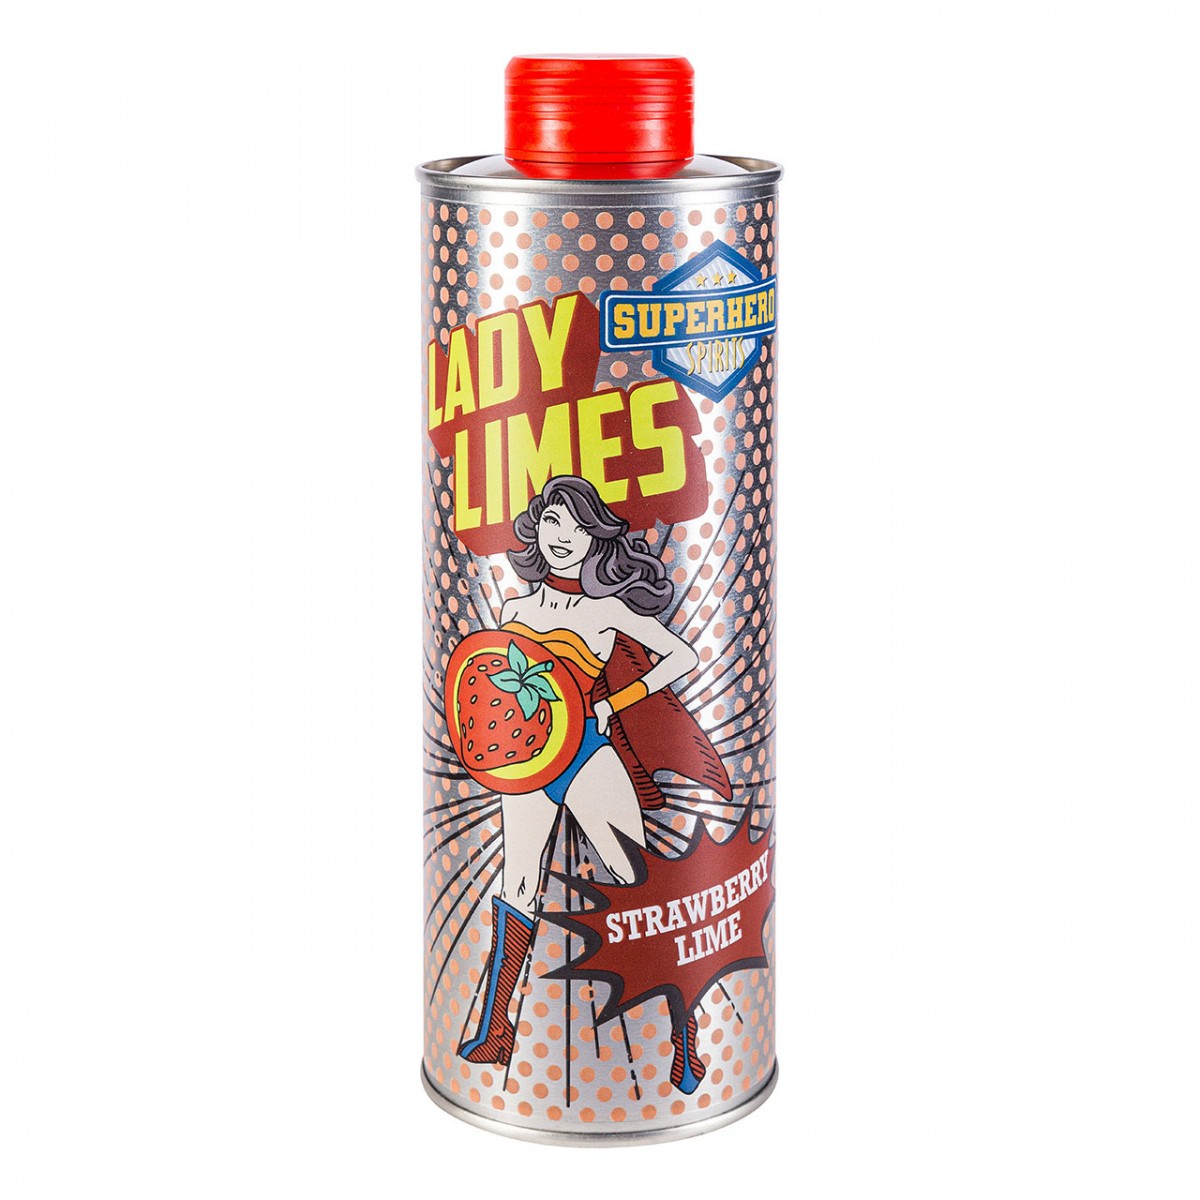 Lady Limes - Erdbeerlimes - Superhero Spirits - 0,5 l - 20% vol. Alk.